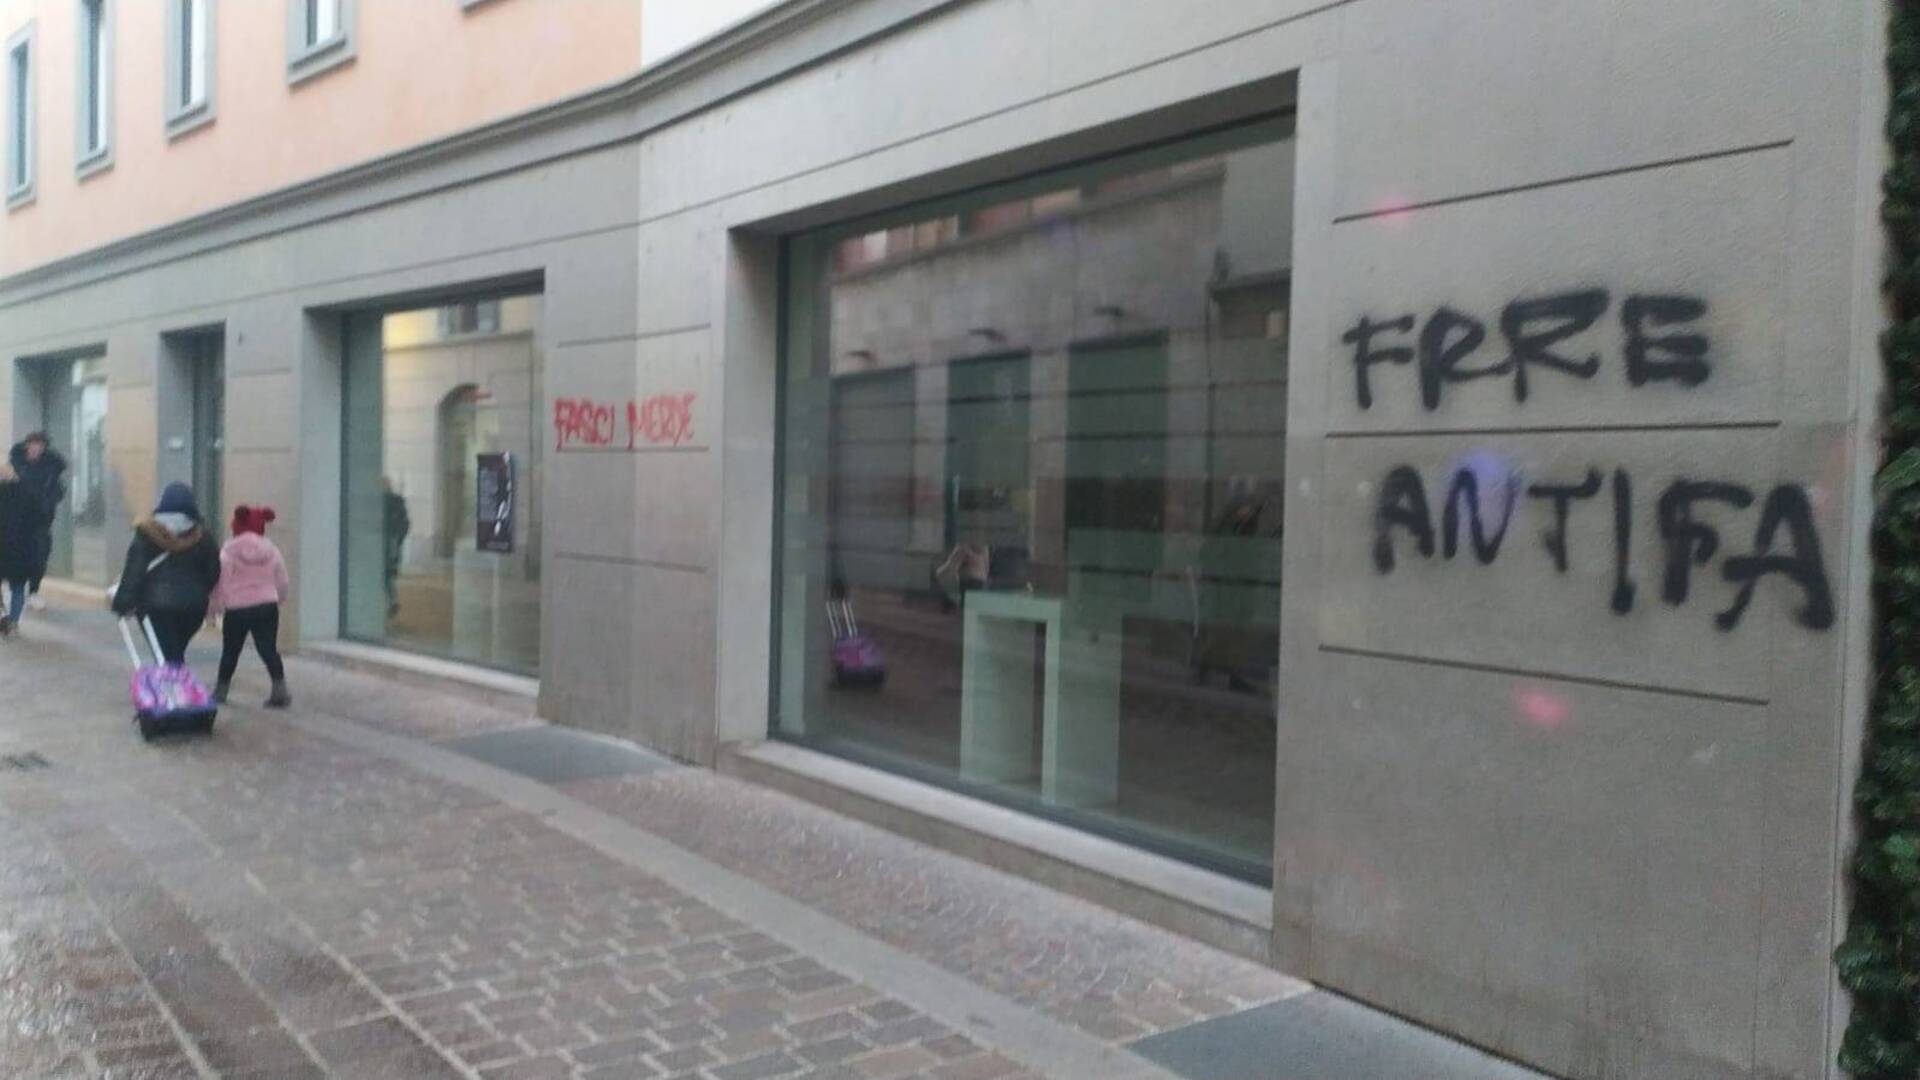 Ieri a Saronno: graffiti in centro. Lettere contro Dante. Nuovo daspo urbano. Picchia la moglie, arrestato